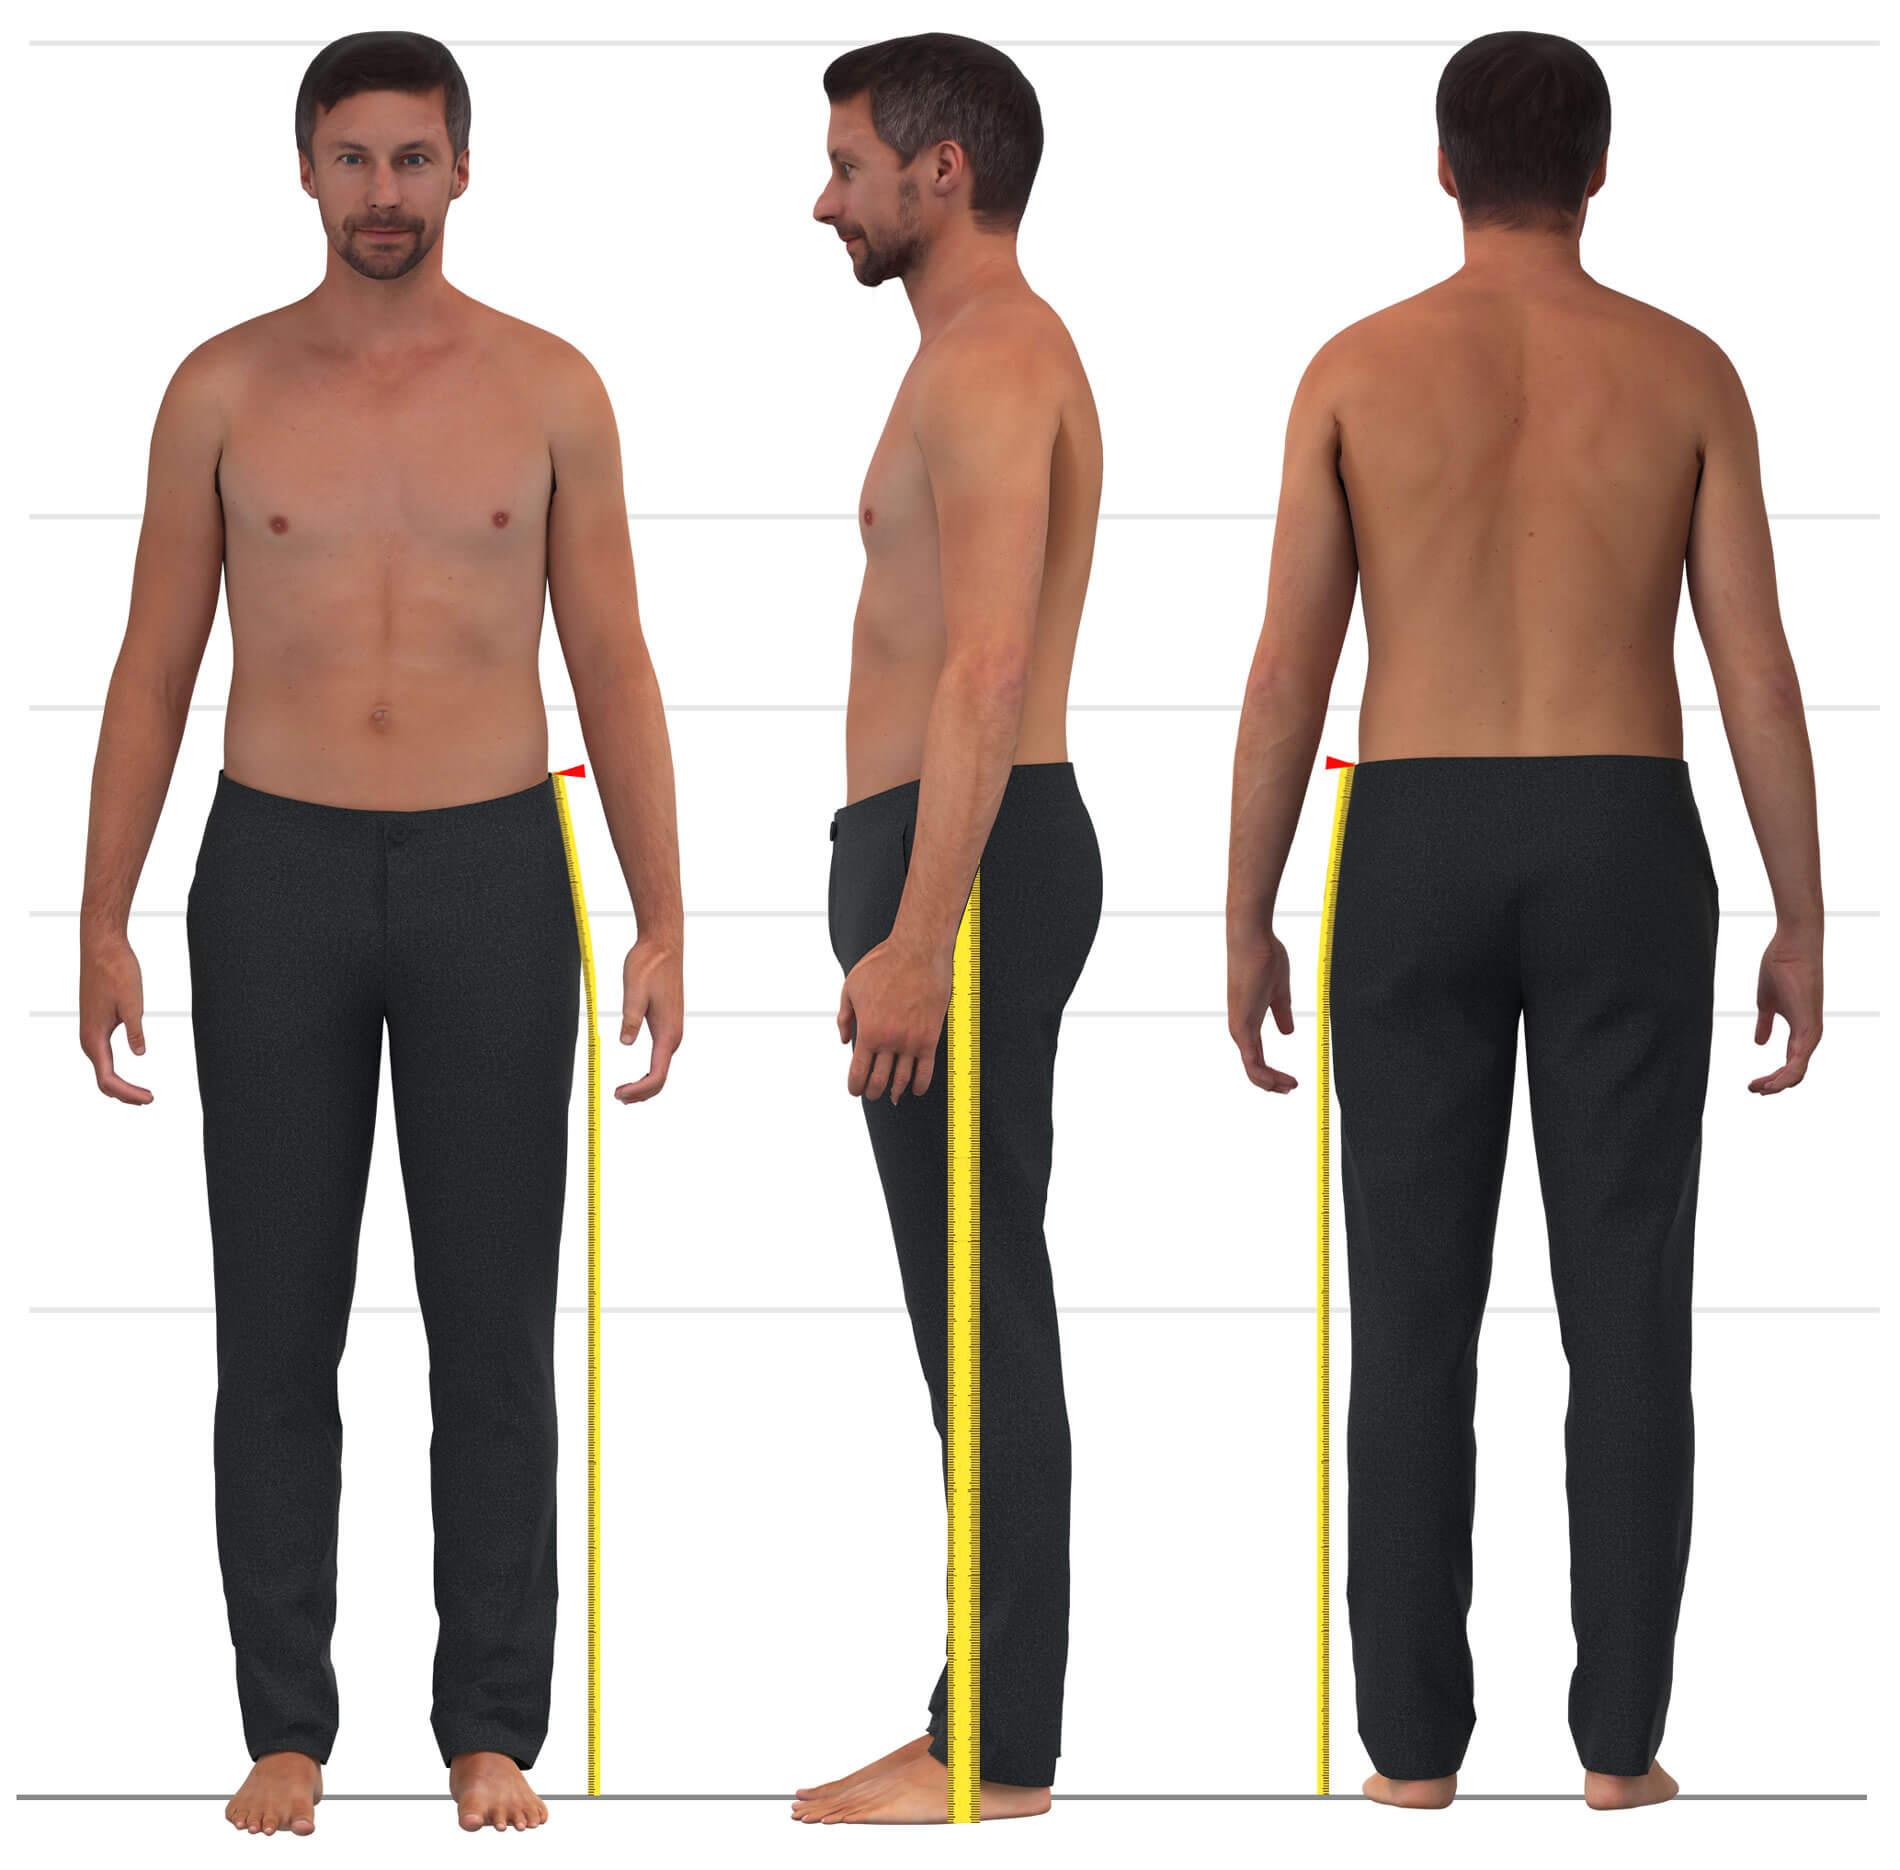 Das Bild zeigt das Maßnehmen der Seitenlänge für Männerhosen.